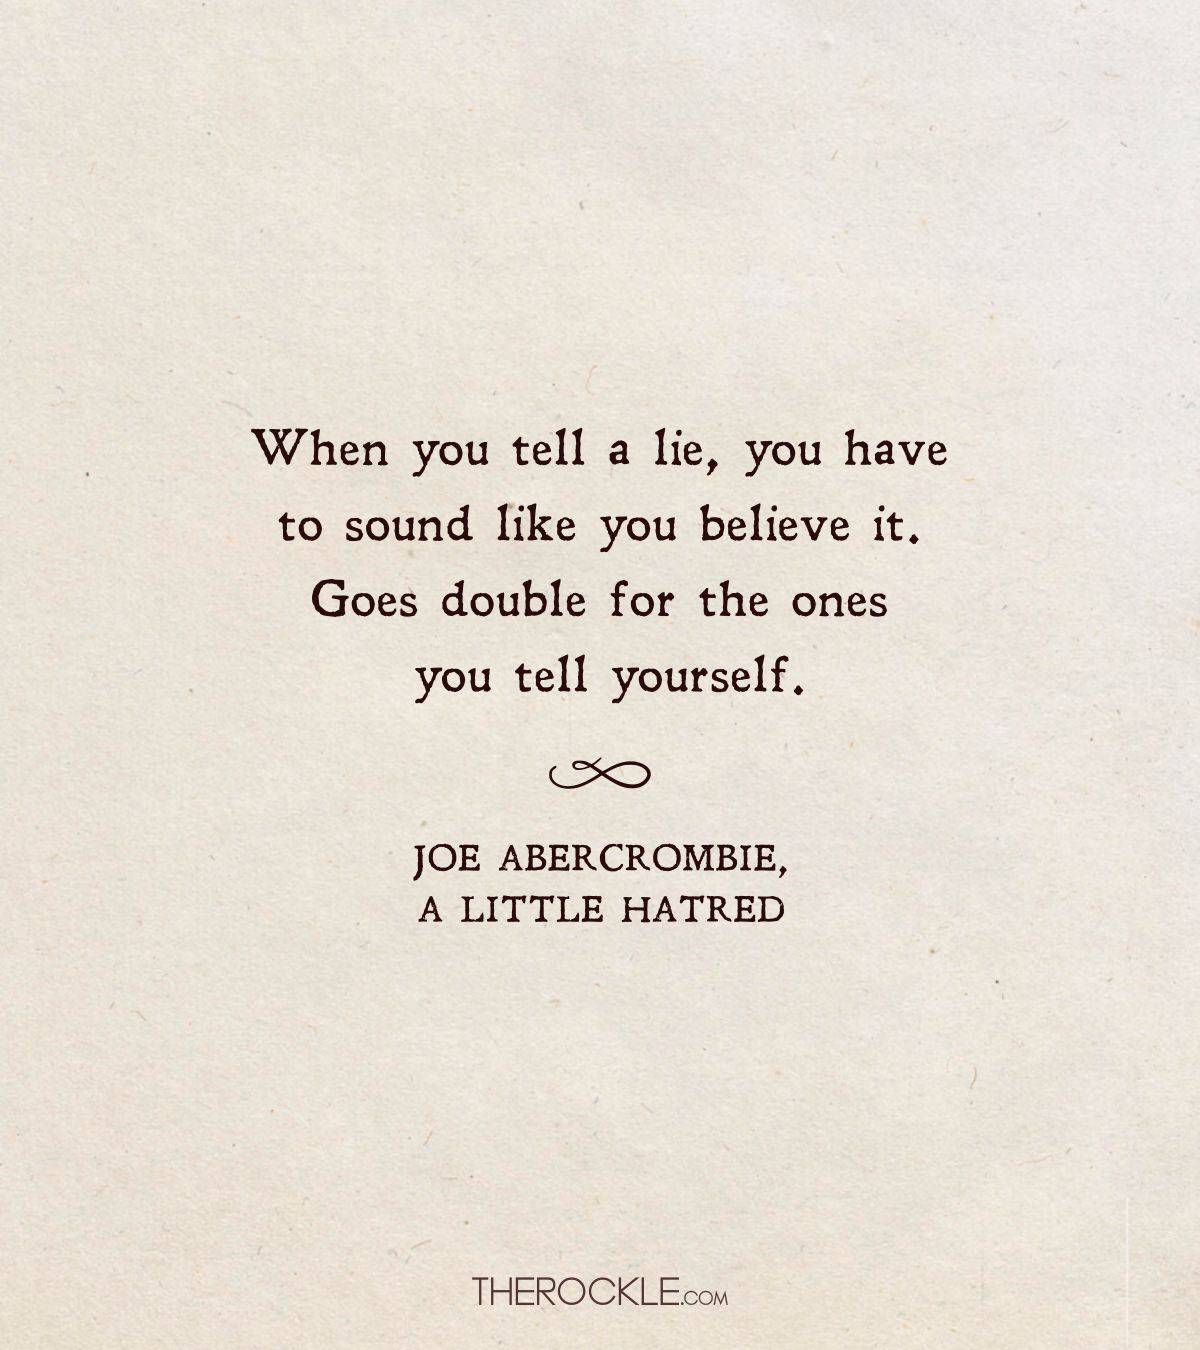 Joe Abercrombie quote on lies